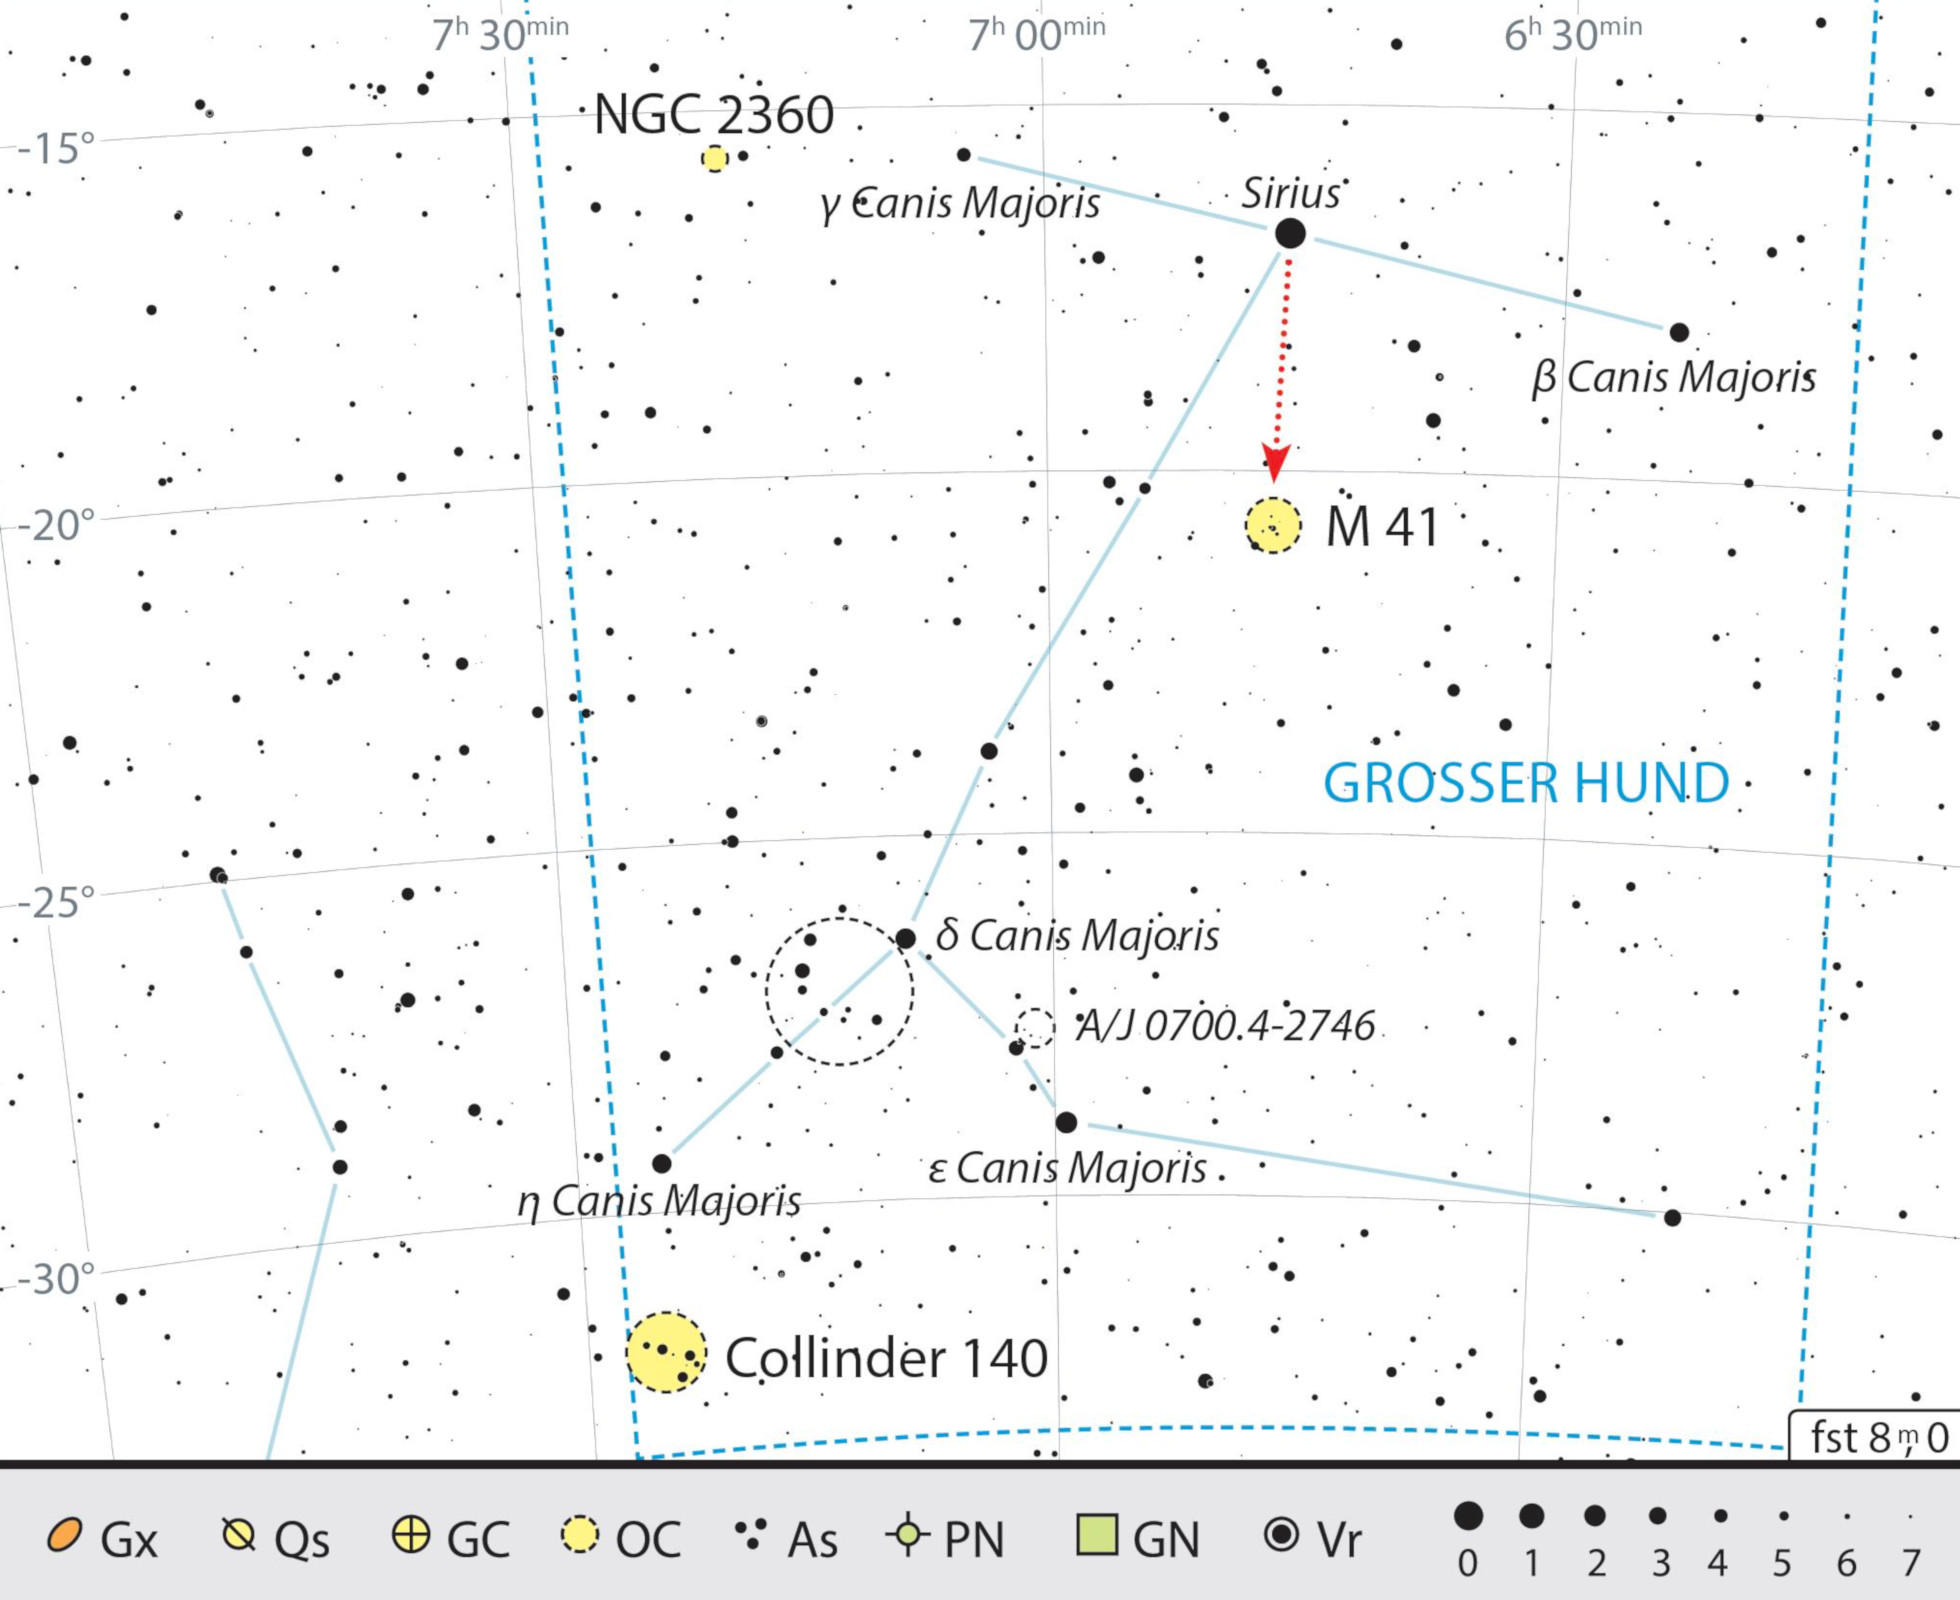 Mapa z obiektami lornetkowymi w gwiazdozbiorze Wielkiego Psa. J. Scholten